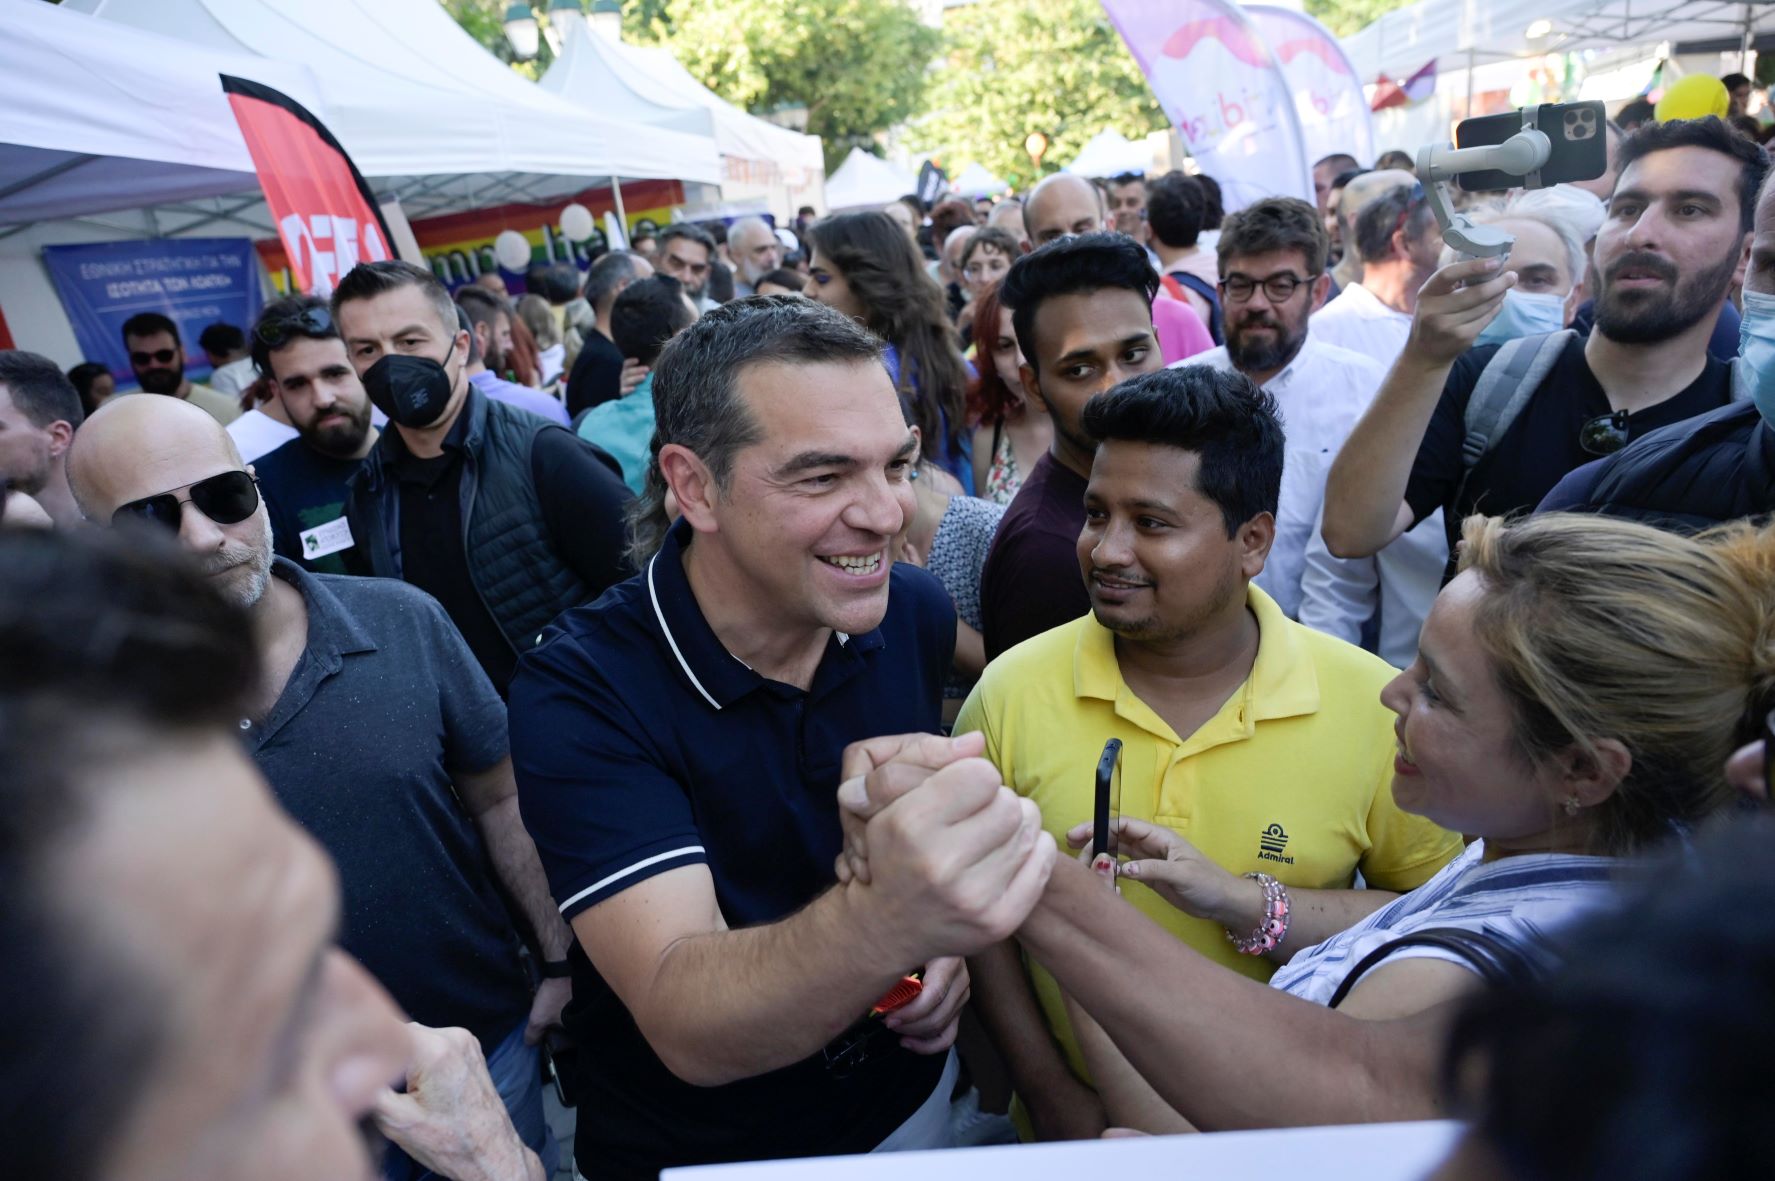 Αλέξης Τσίπρας - Athens Pride: «Χαρά μας να ψηφίσει η κυβέρνηση την πρόταση νόμου του ΣΥΡΙΖΑ για τα δικαιώματα της ΛΟΑΤΚΙ κοινότητας»